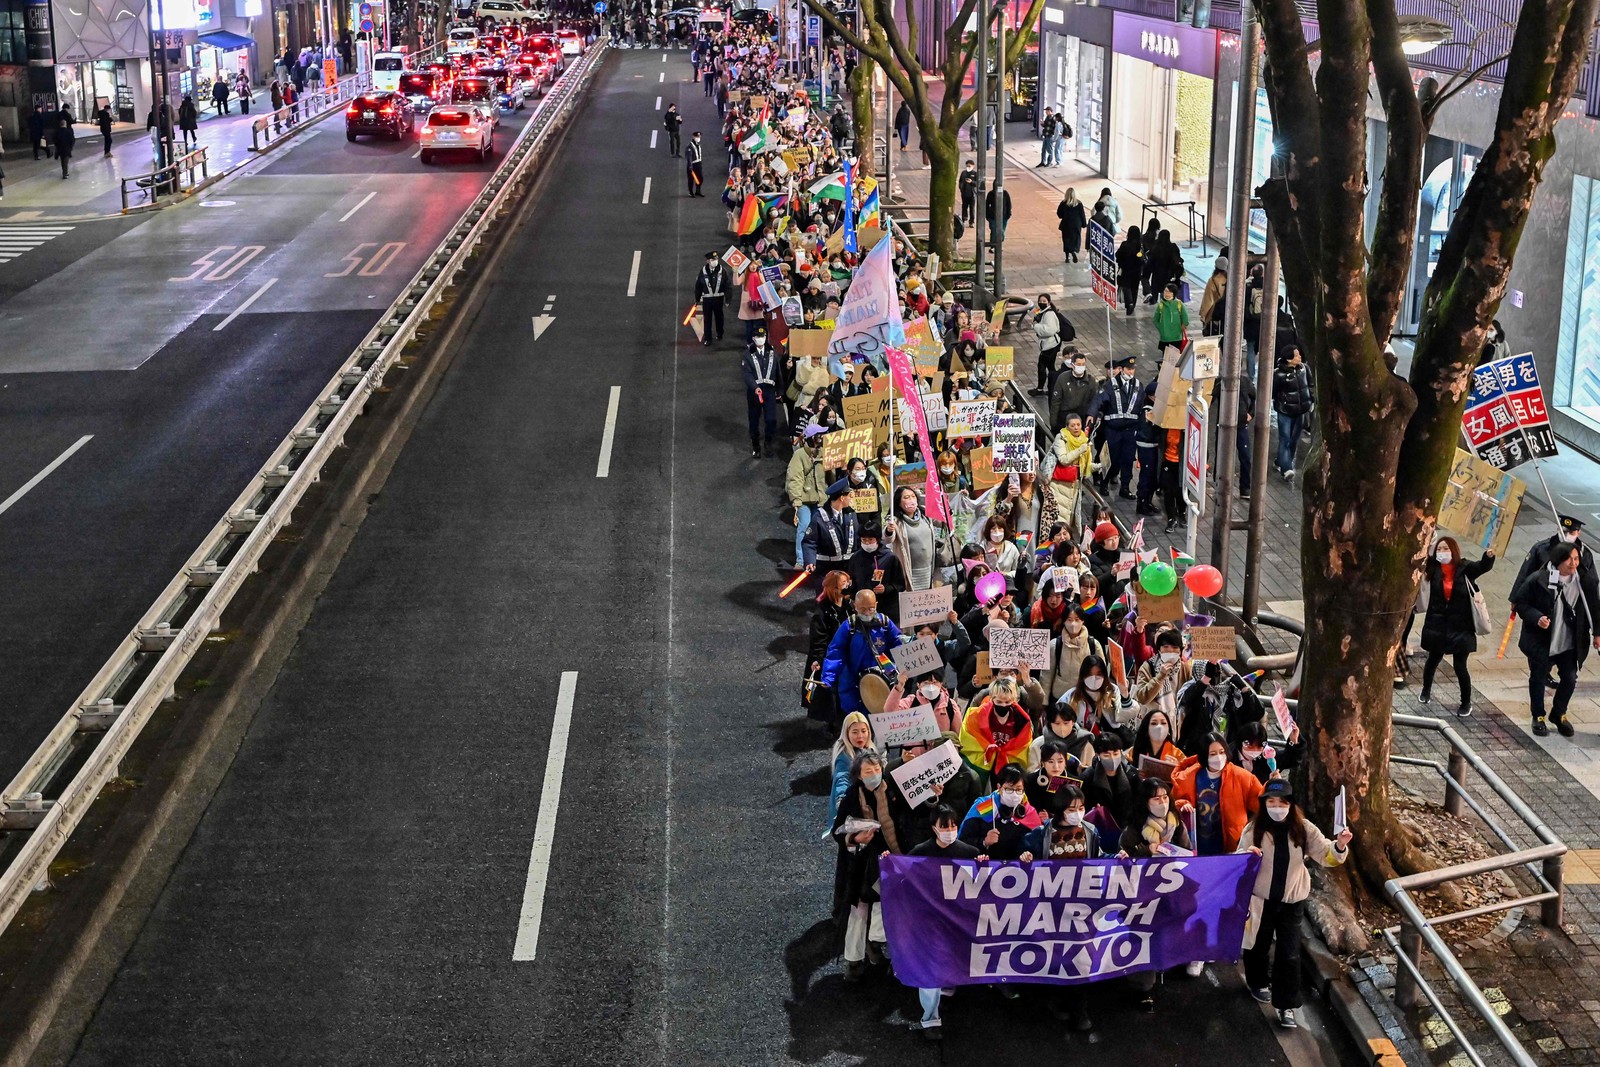 Marcha pelo Dia Internacional das Mulheres em Shibuya, Tókio, Japão — Foto: RICHARD A. BROOKS